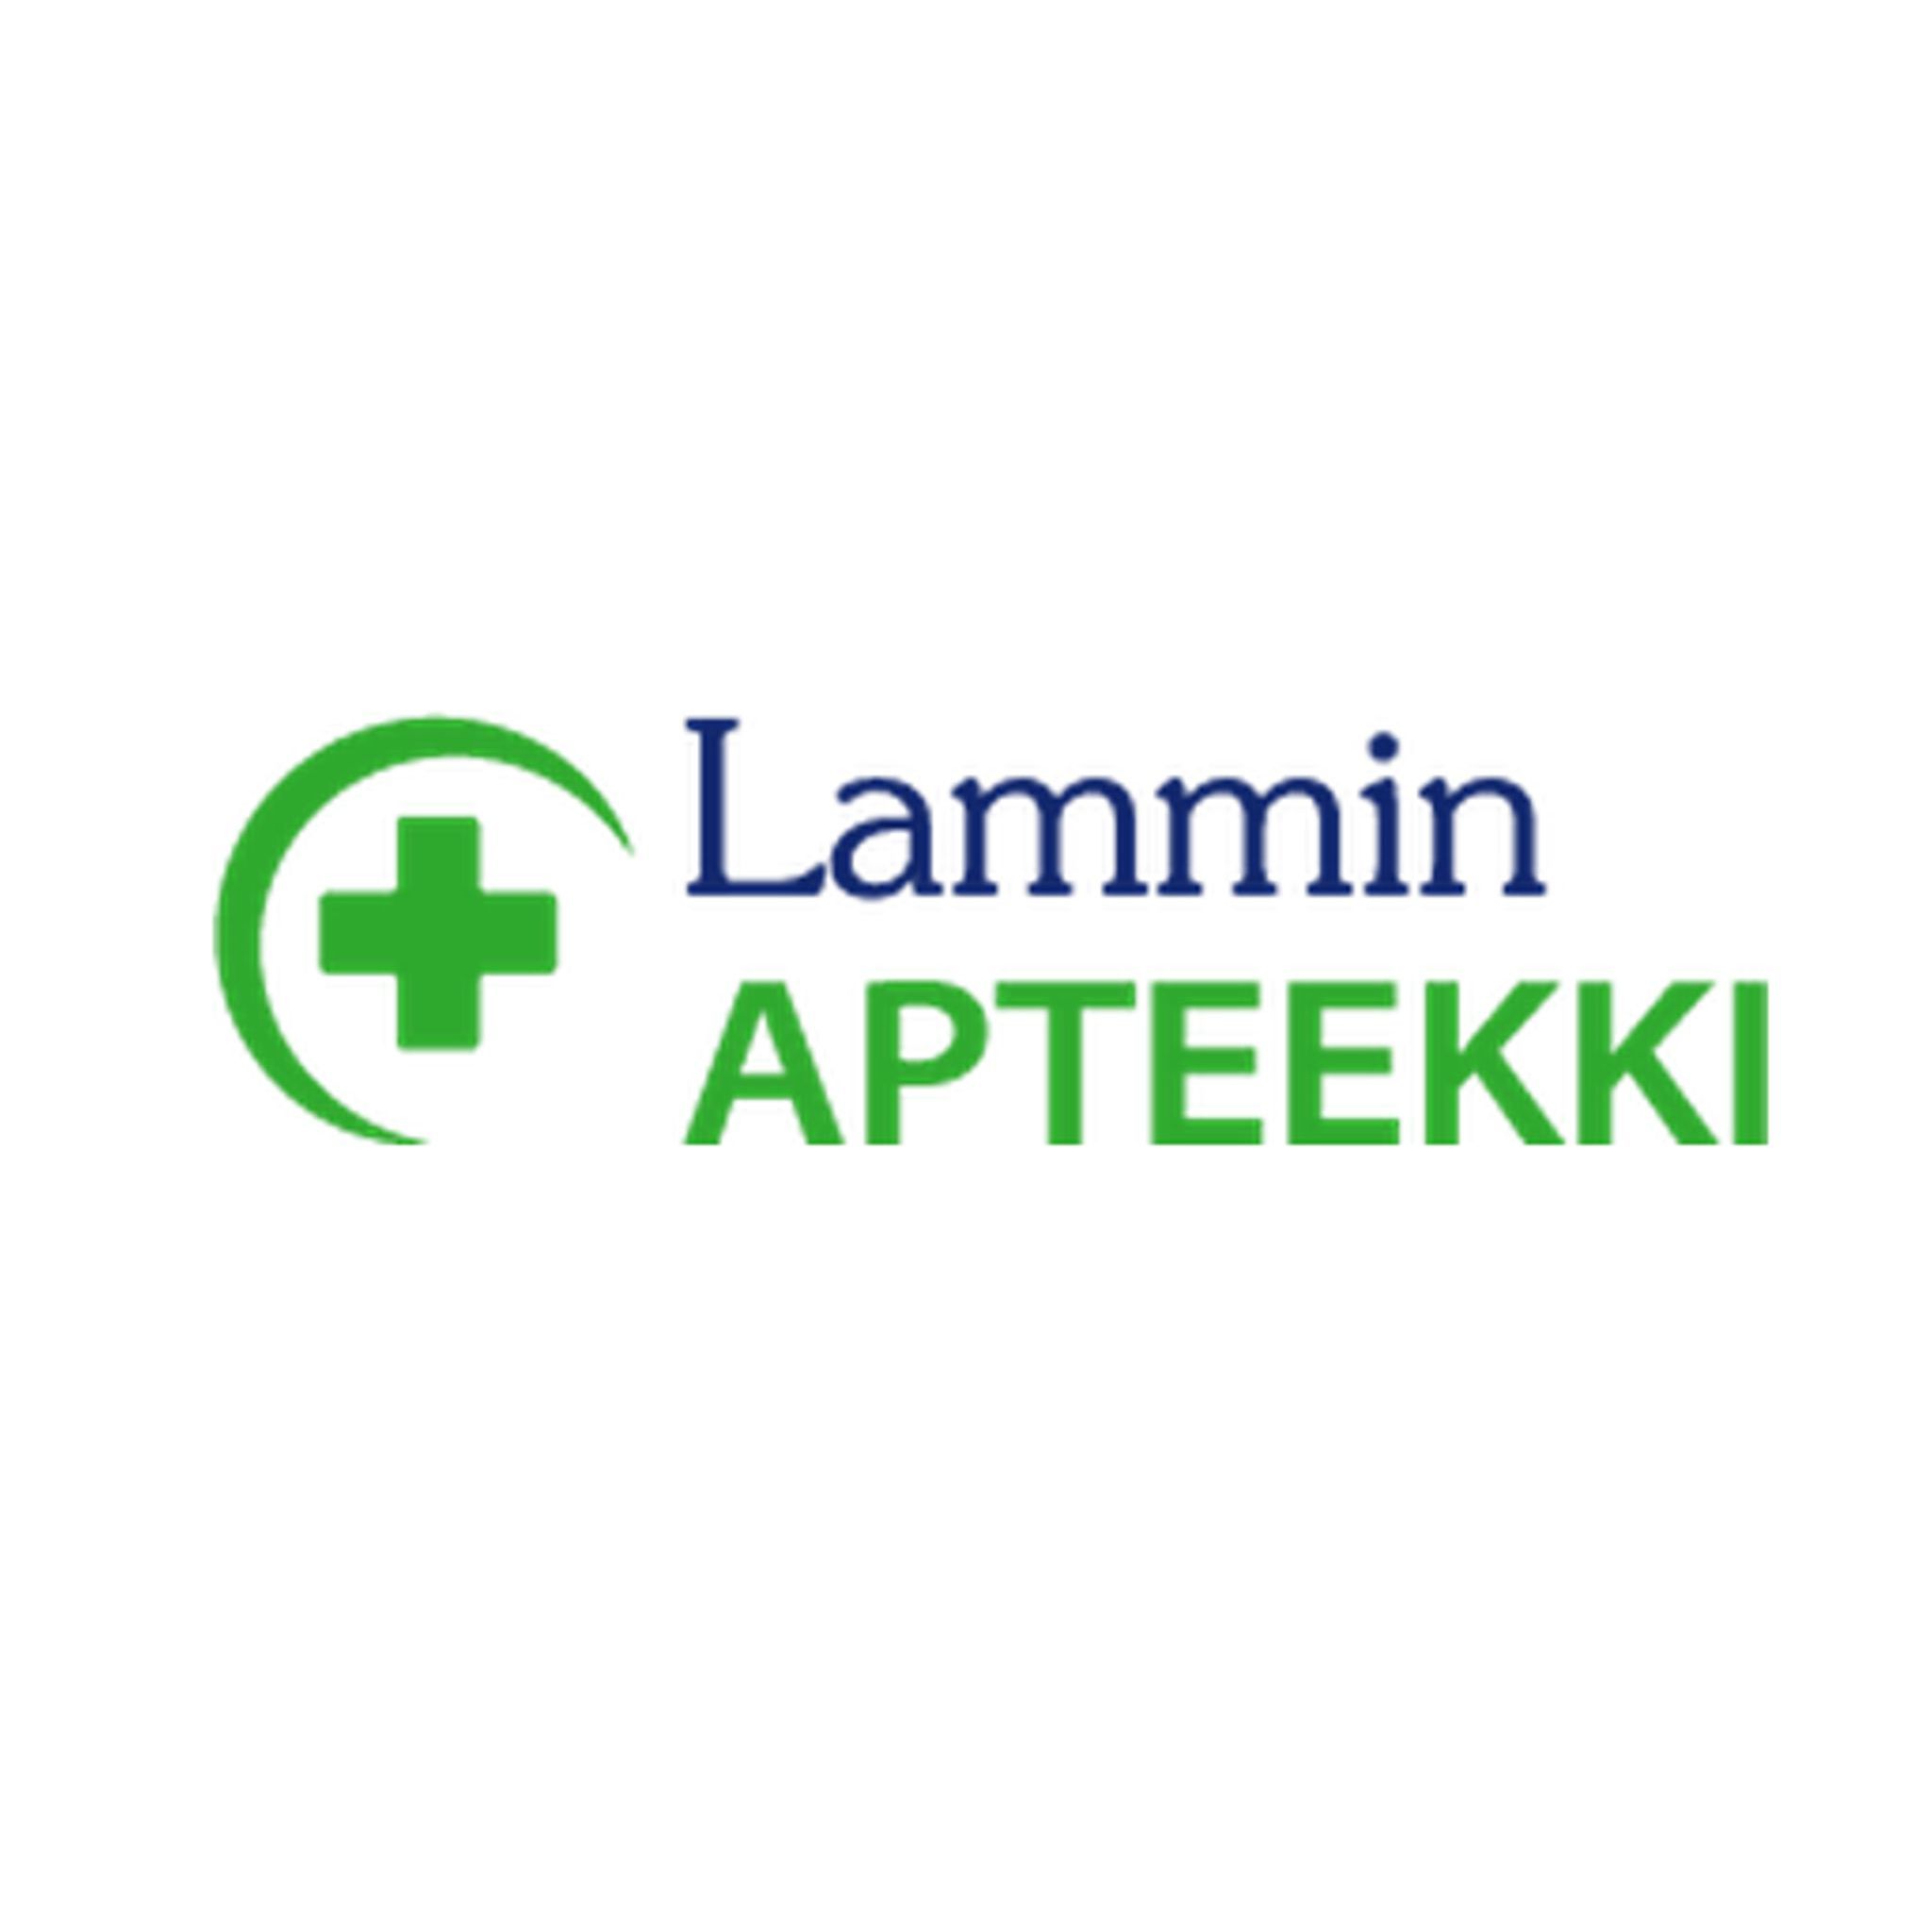 Lammin apteekki Logo